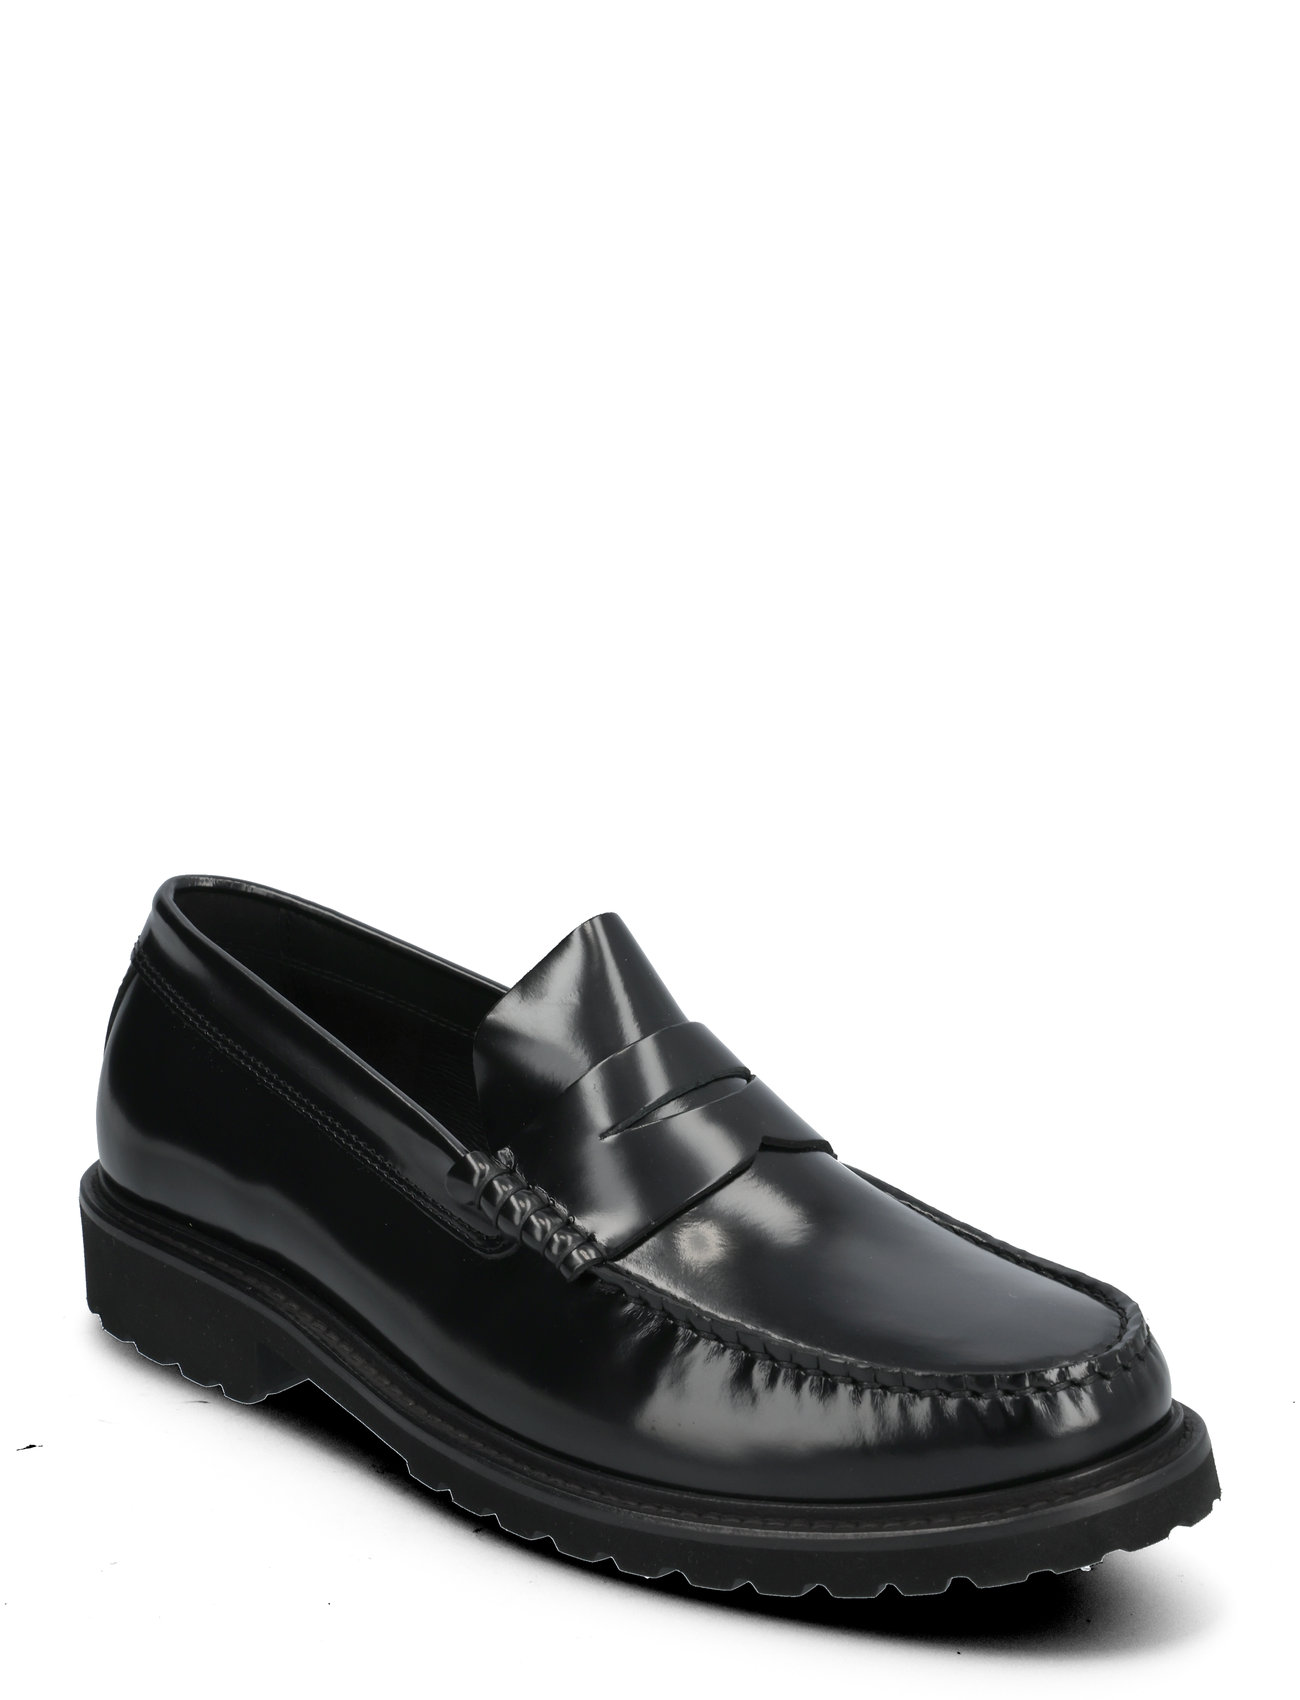 Penny Loafer - Black Polido Leather Loafers Låga Skor Black Garment Project